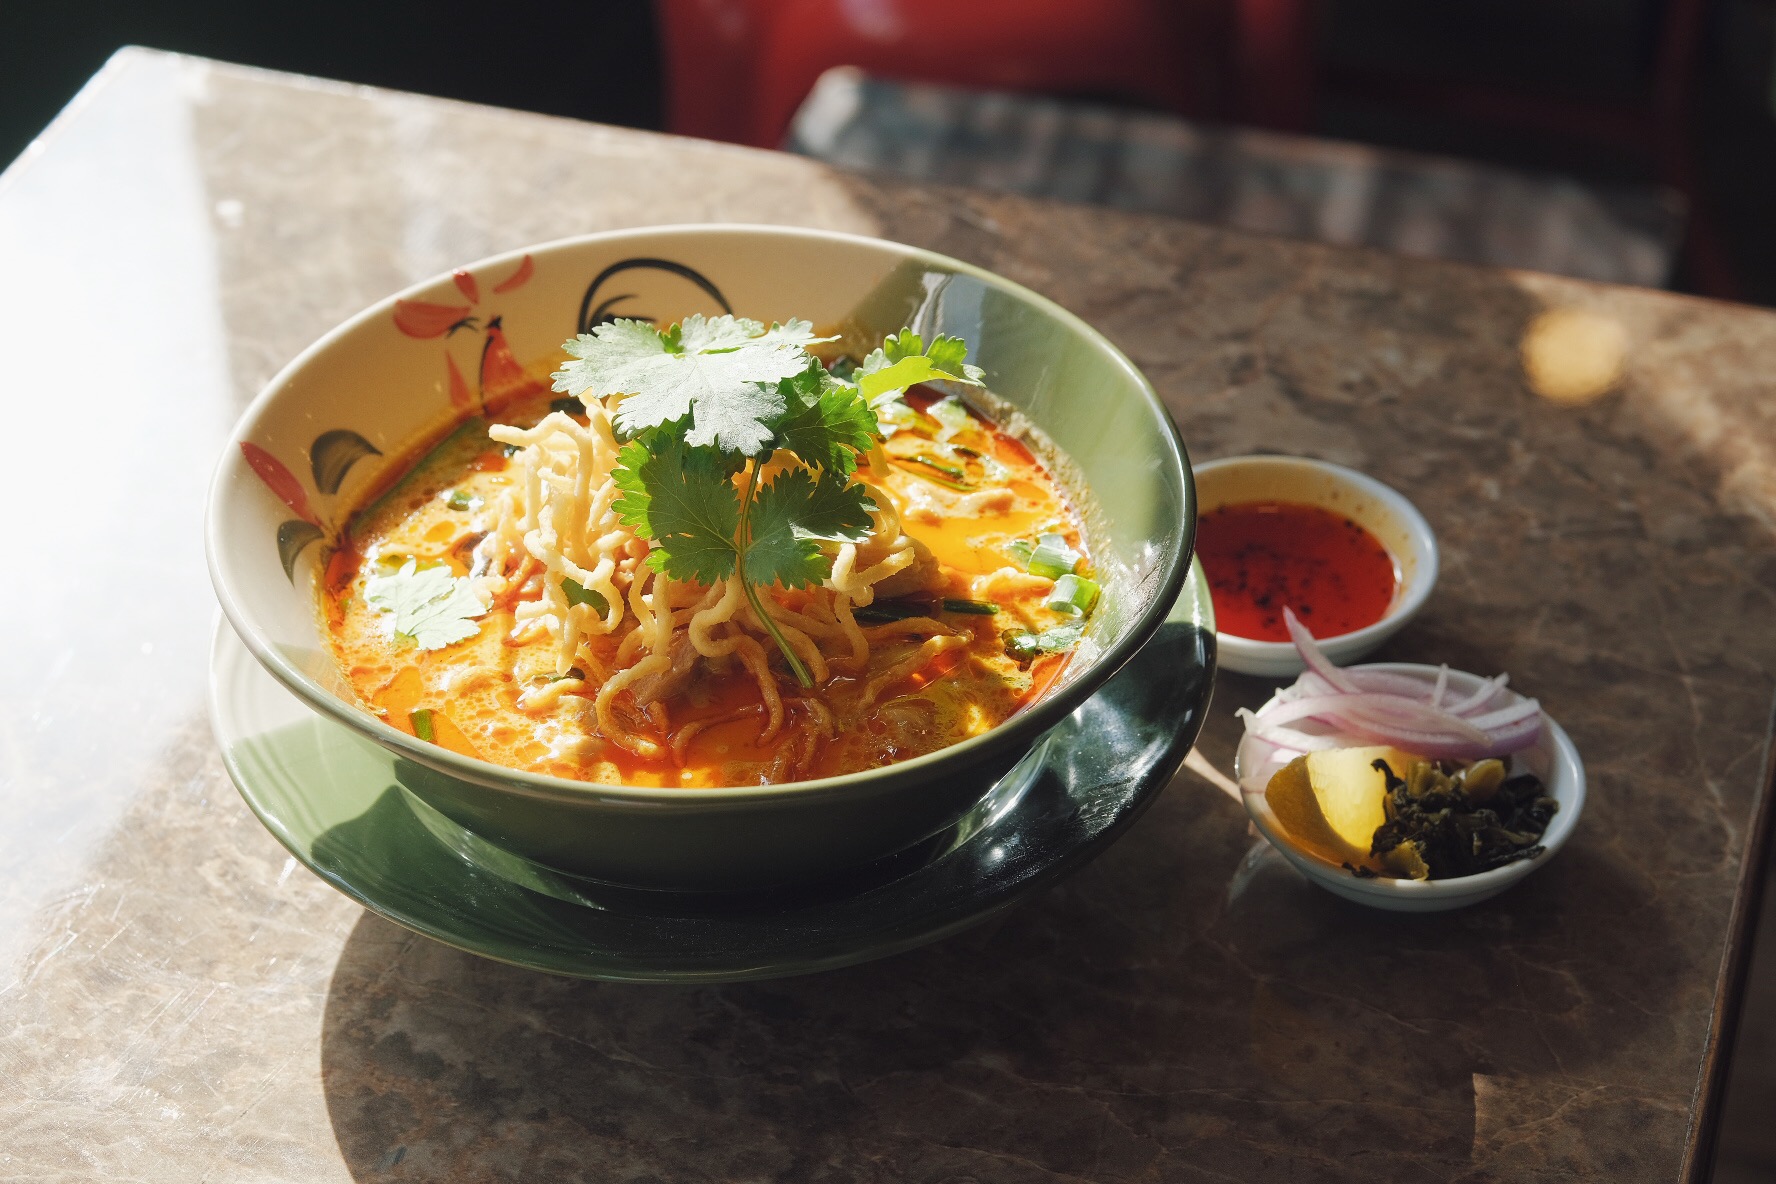 栄にタイ料理の店 泰麺 タイメン がオープン 東桜パクチー の人気の麺料理がそろった本格タイ料理に舌鼓 名古屋 日刊ケリー